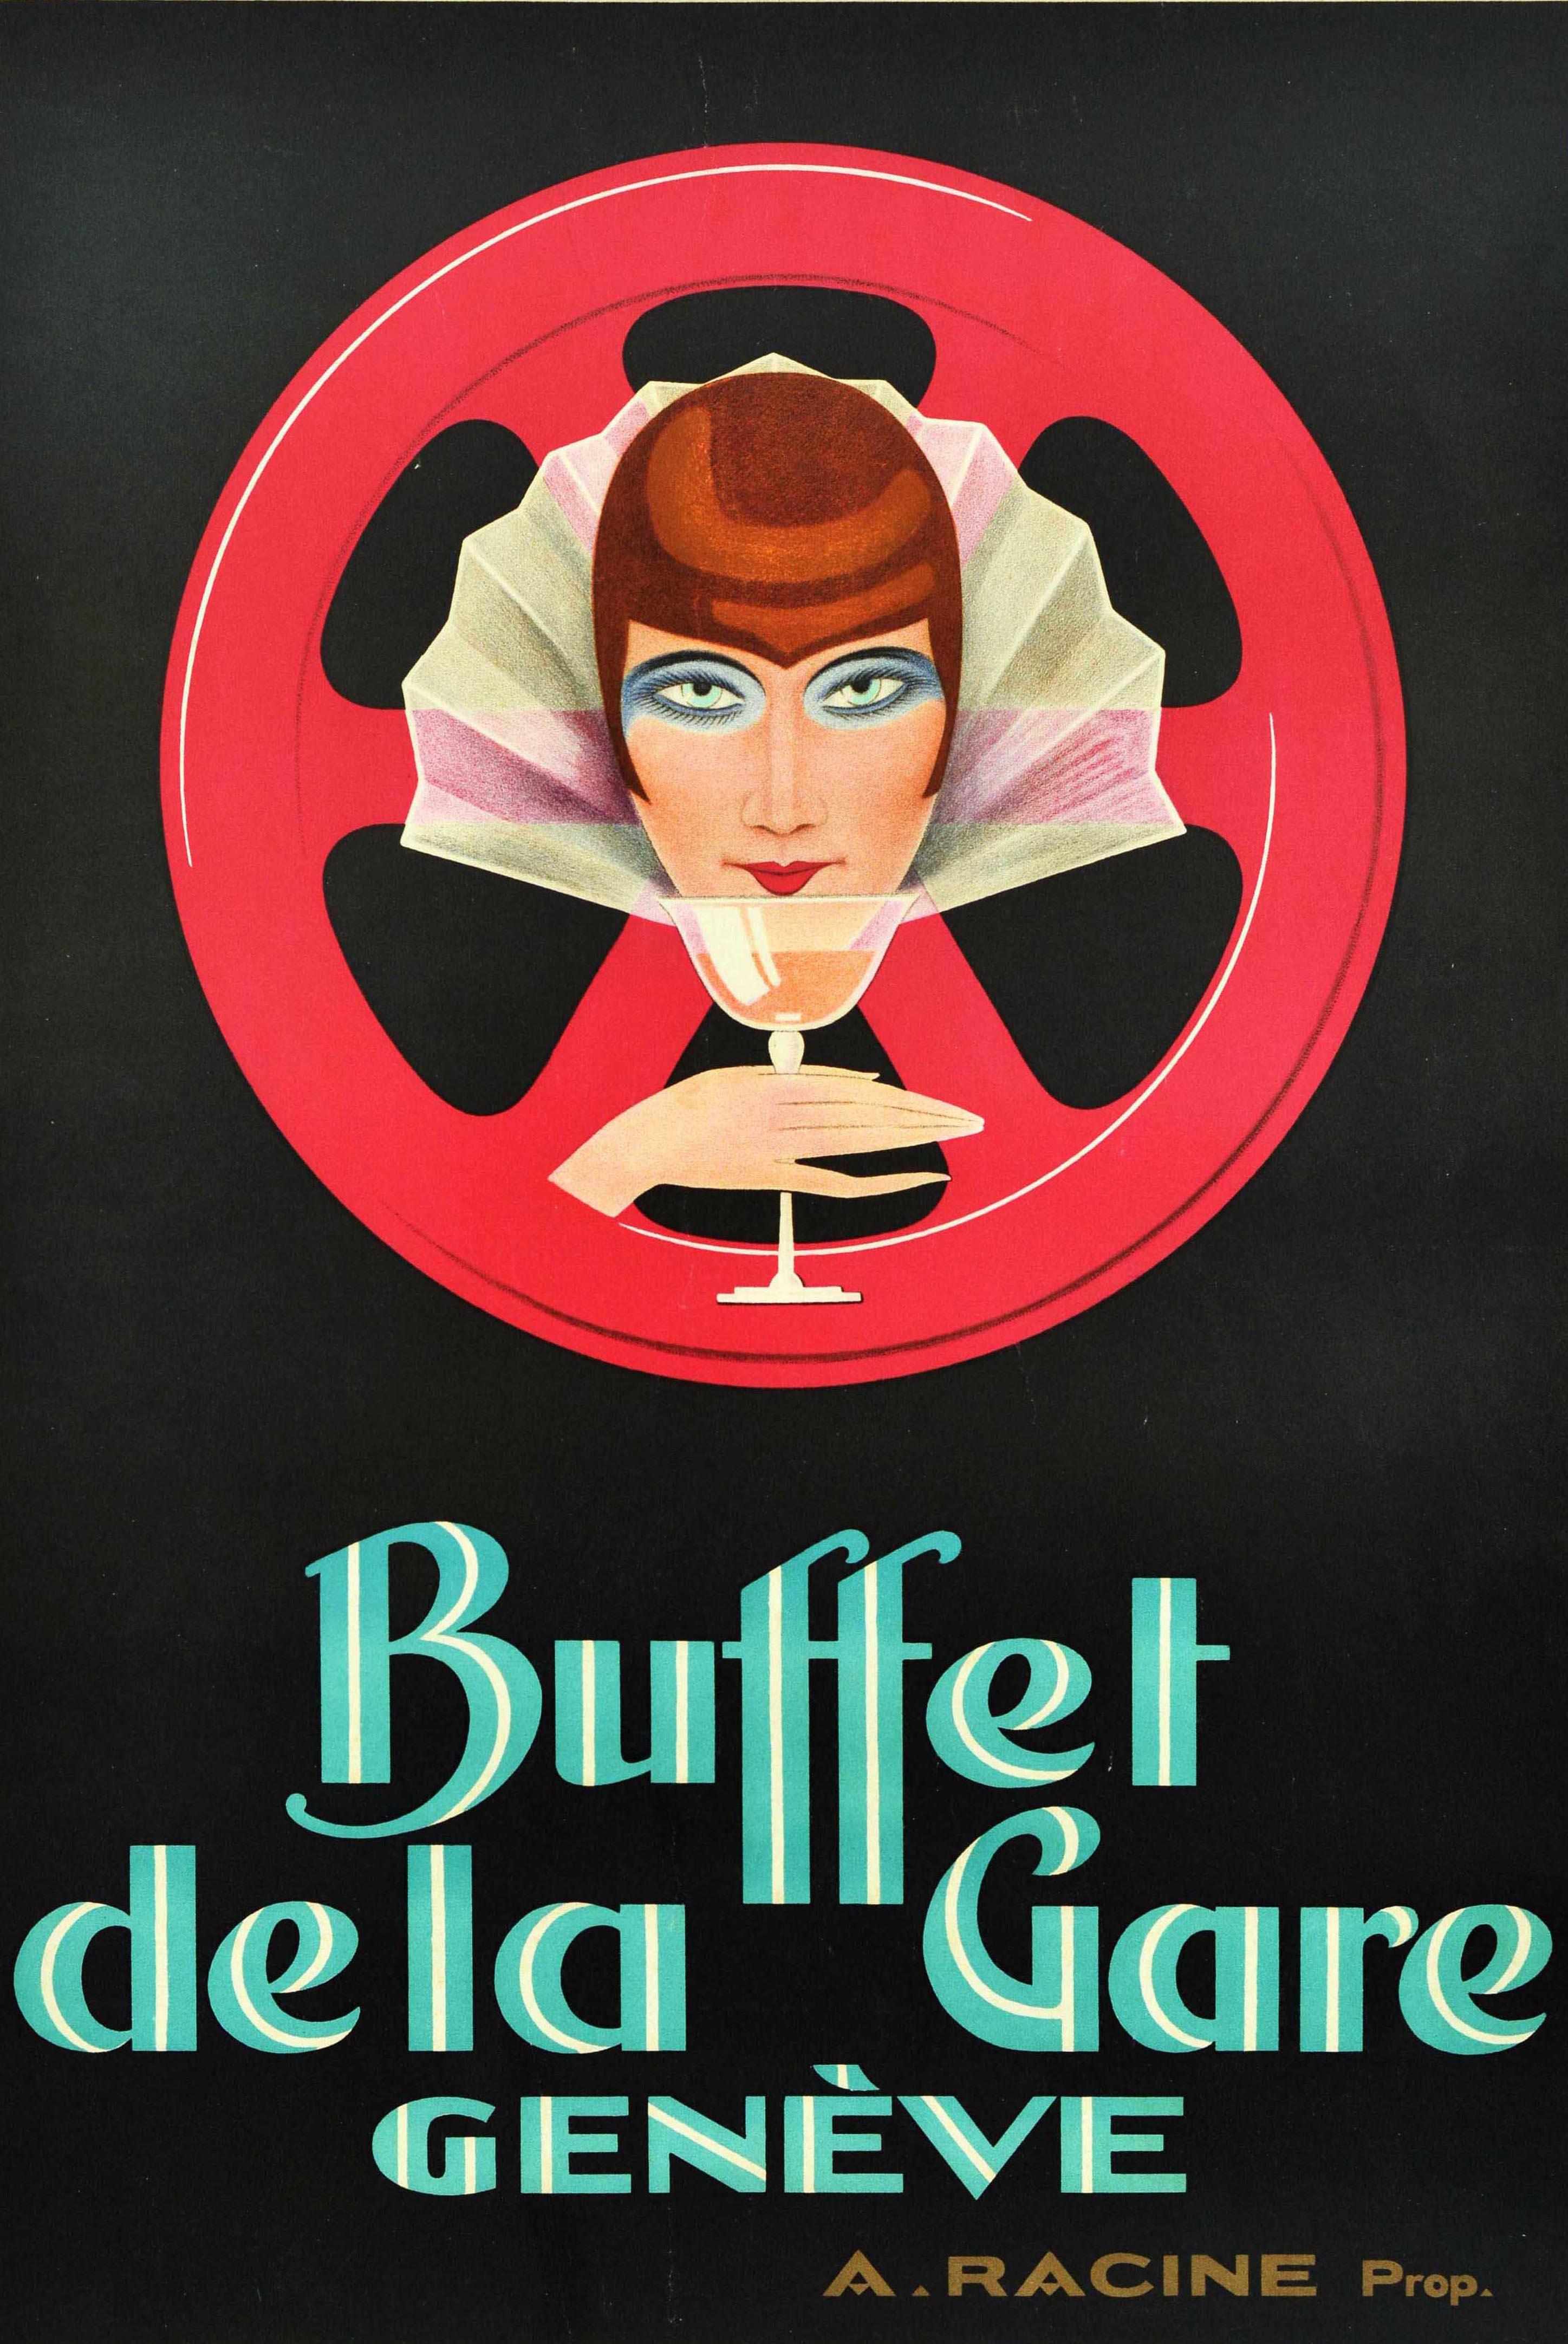 Affiche publicitaire ancienne originale pour le Buffet De La Gare Geneve / Station Buffet Geneva présentant une étonnante image Art Déco d'une dame regardant le spectateur, tenant un verre à boire sur une roue rouge sur le fond noir, le texte